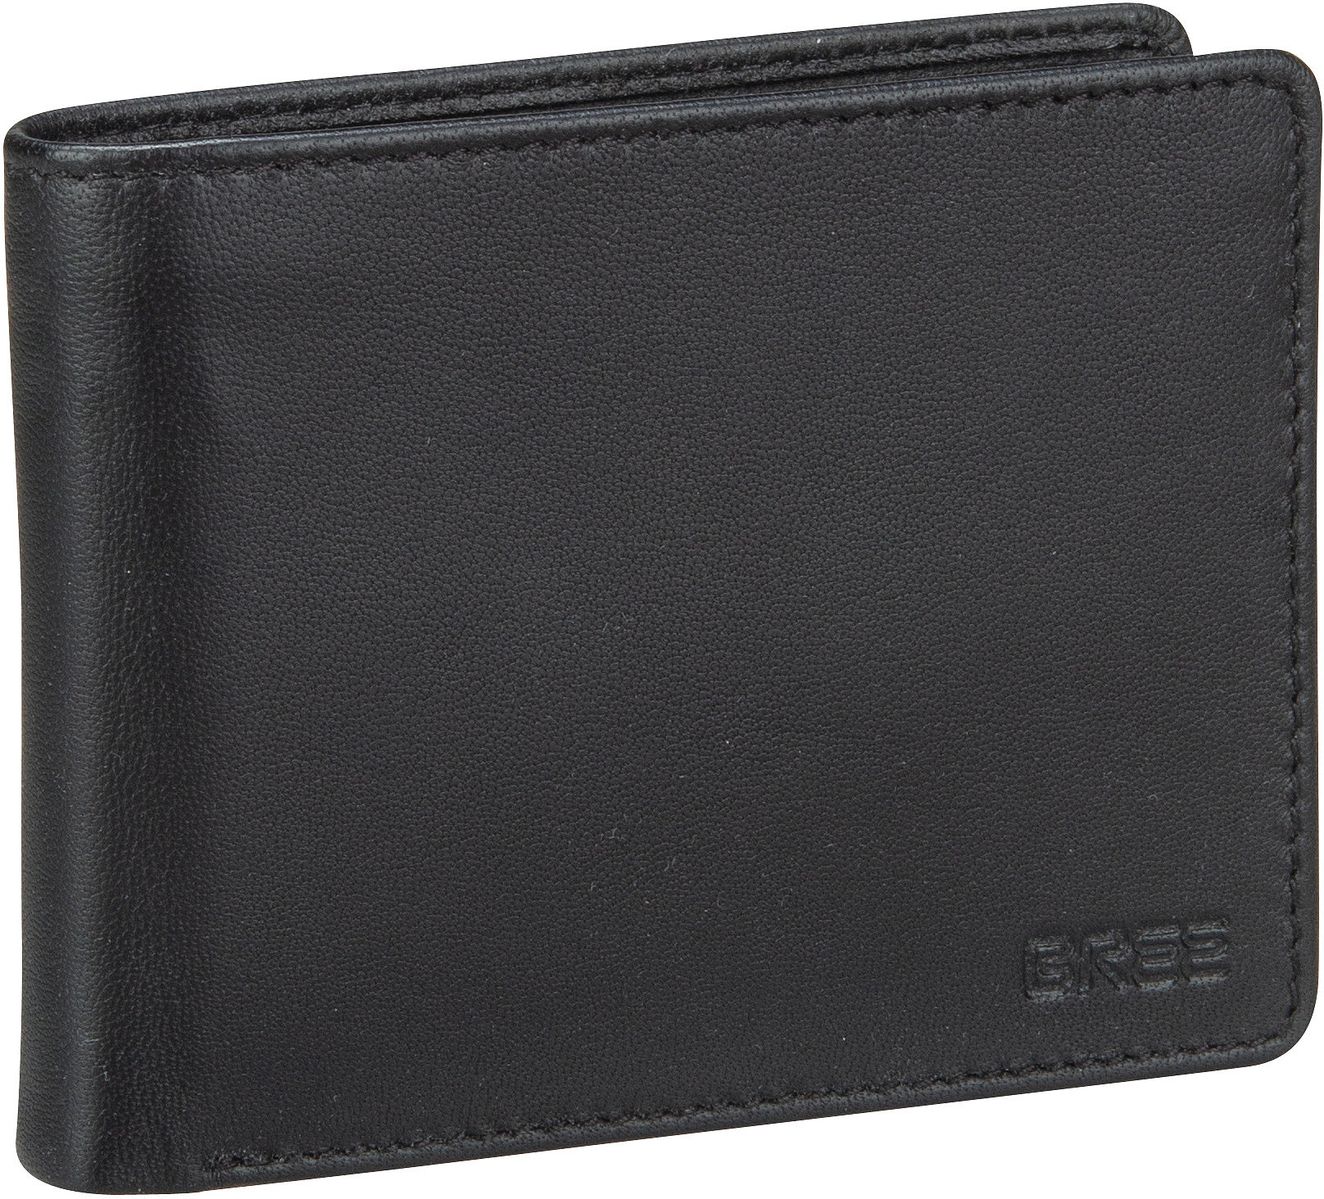 Bree Pocket New 112 - Black